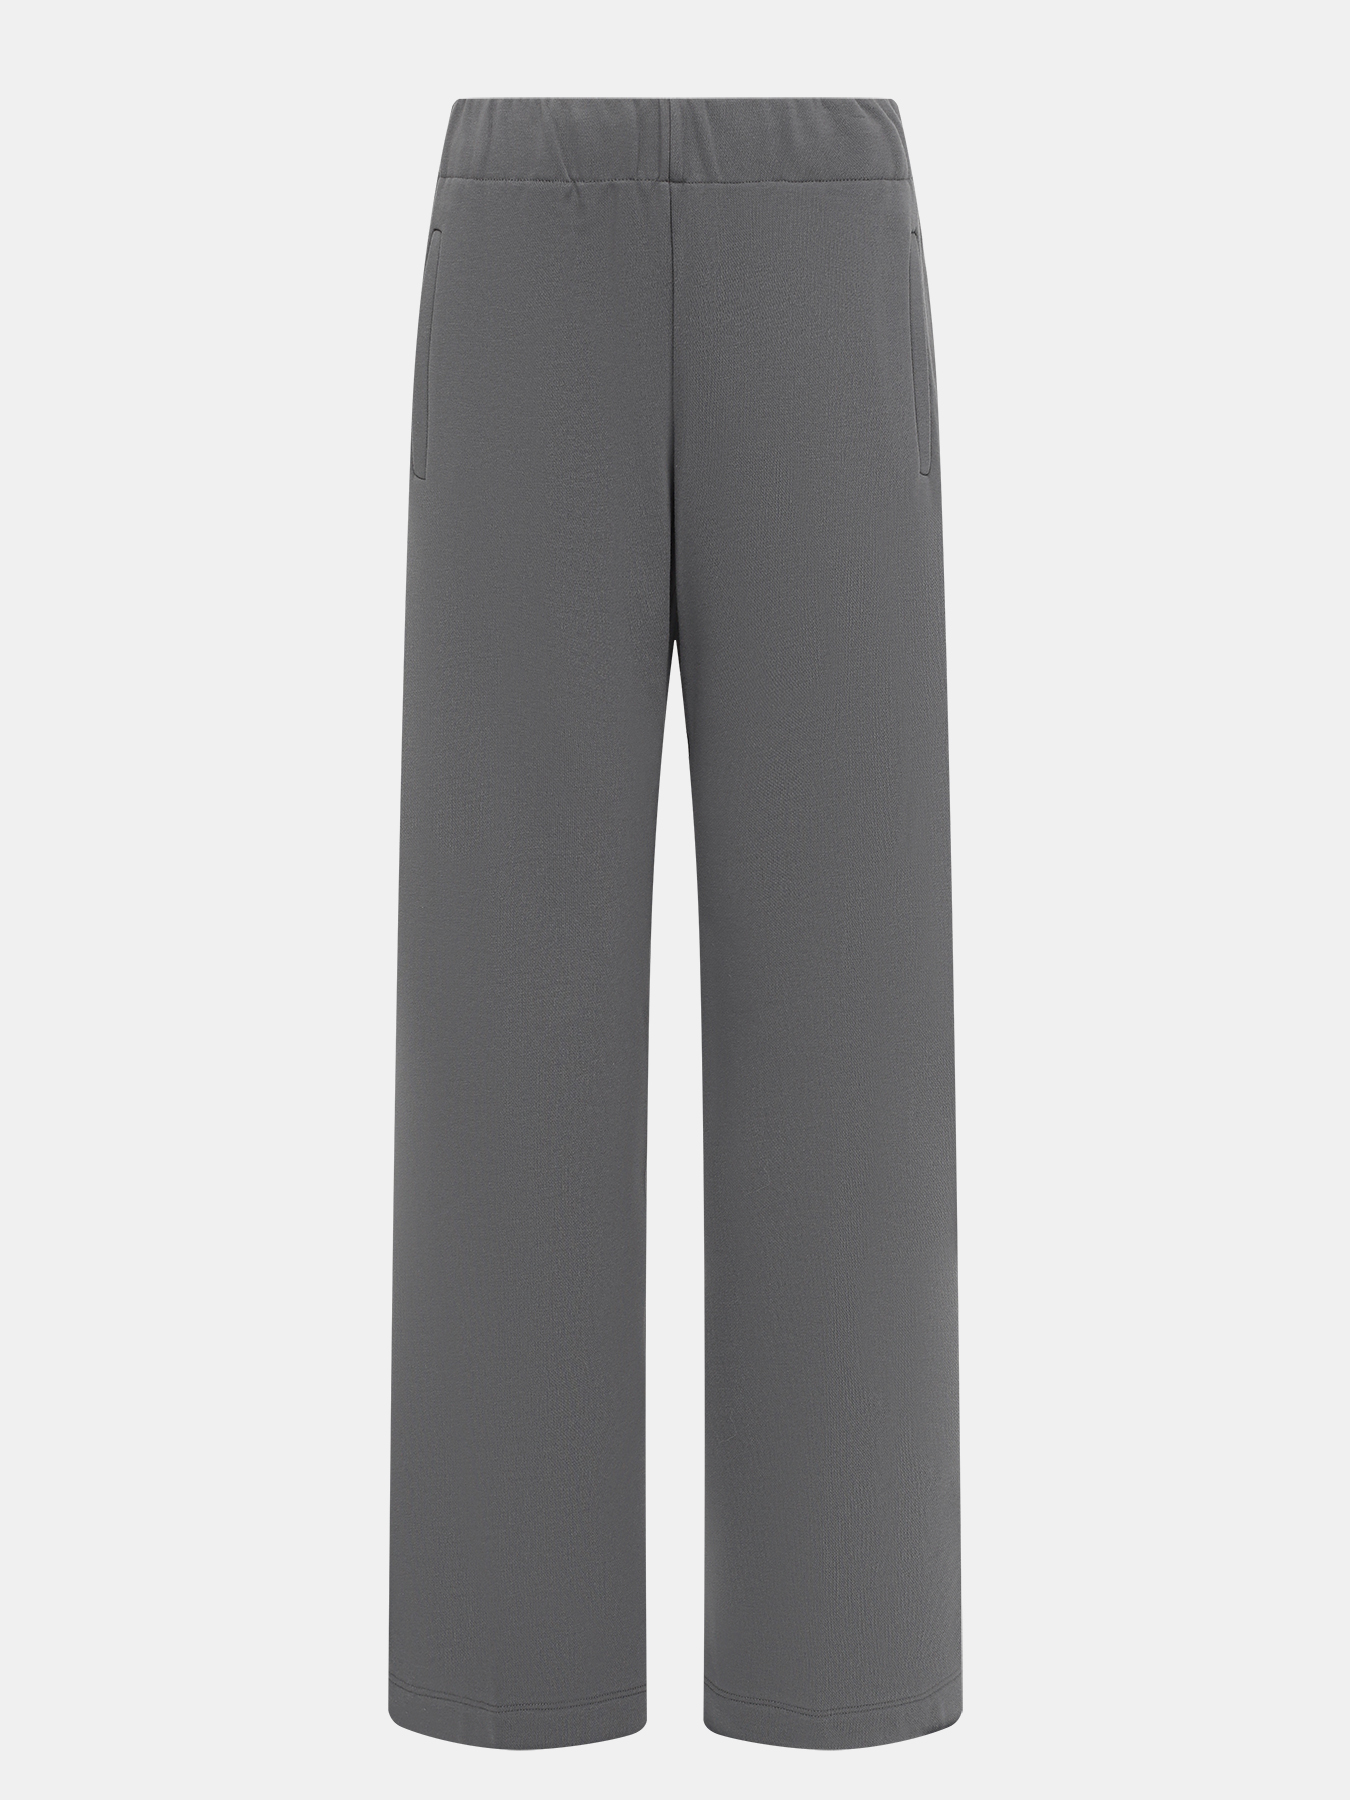 Спортивные брюки Seventy Venezia 412228-044, цвет серый, размер 46-48